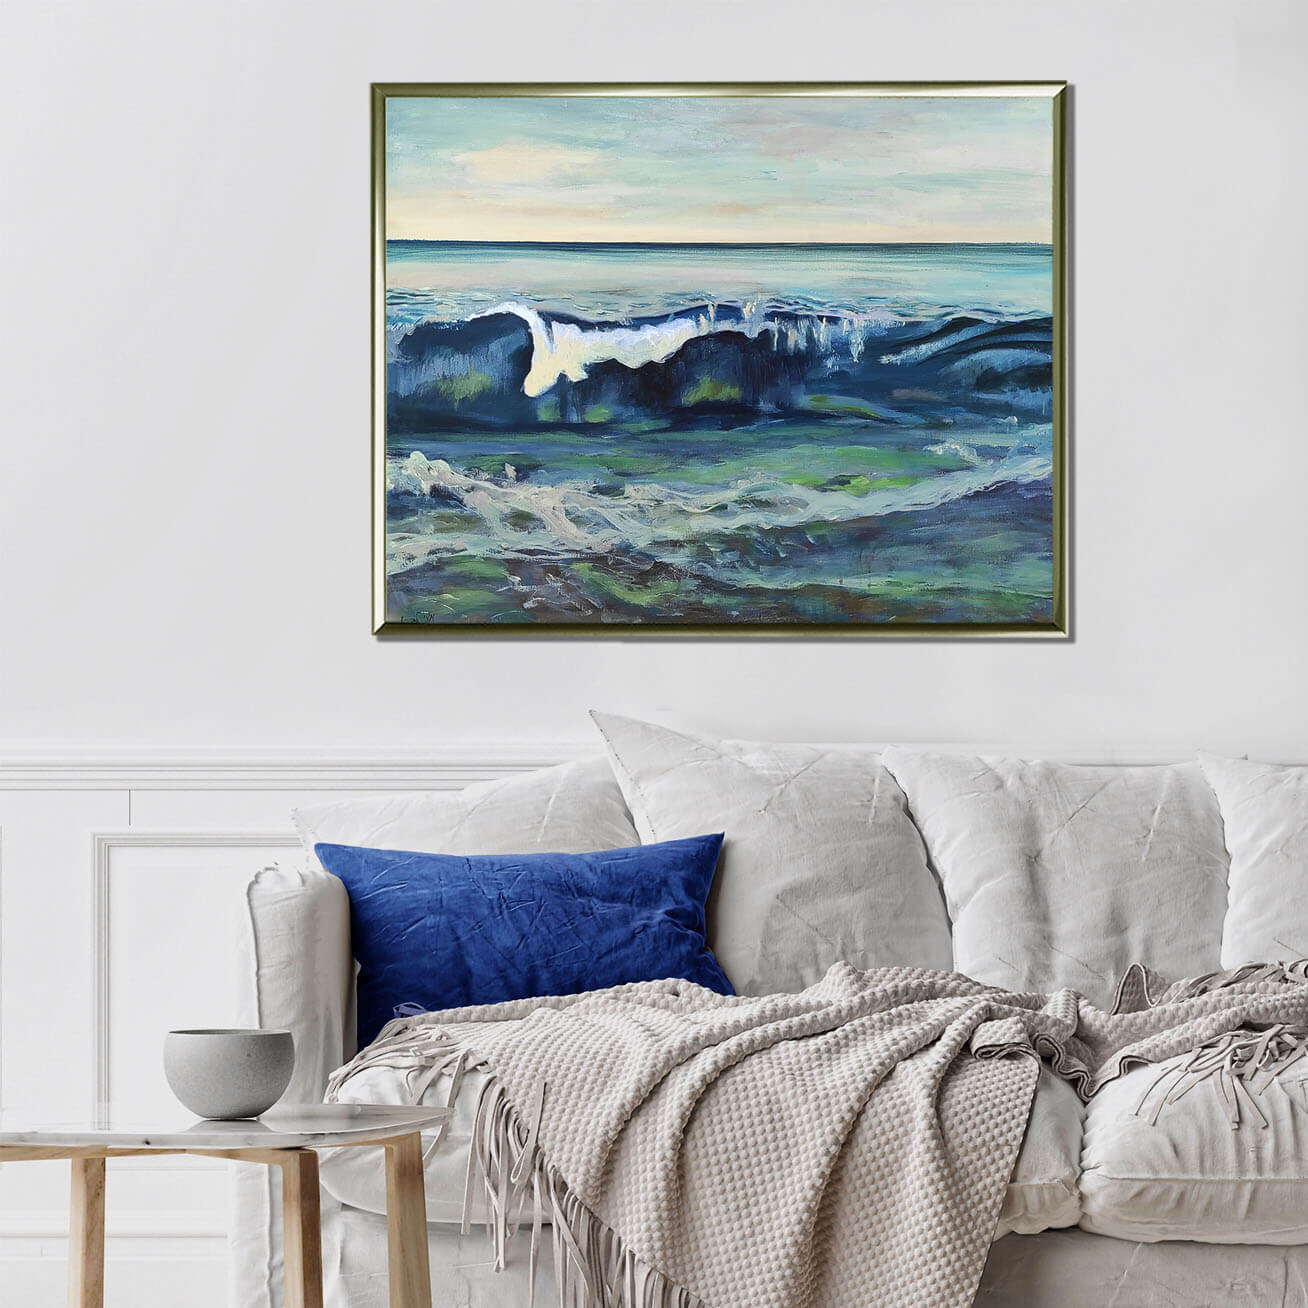 ציור ים וגלים, ציור מעל ספה לבנה, תמונה לסלון בצבעים כחול וירוק, ציירת מירי לביא.